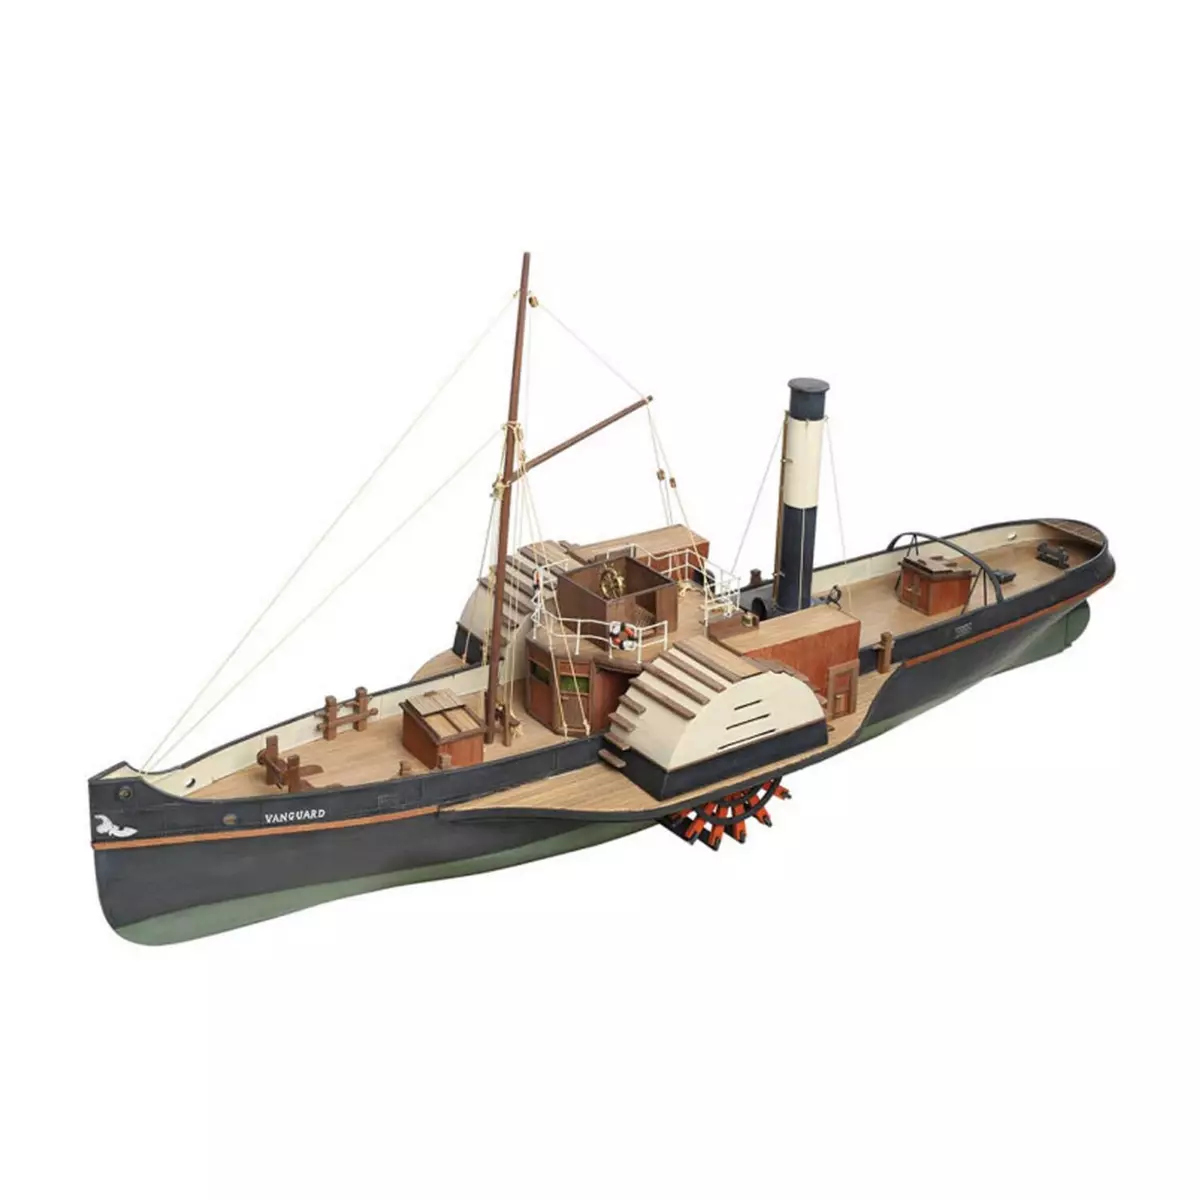 DISARMODEL Maquette bateau en bois : Remorqueur à vapeur Vanguard